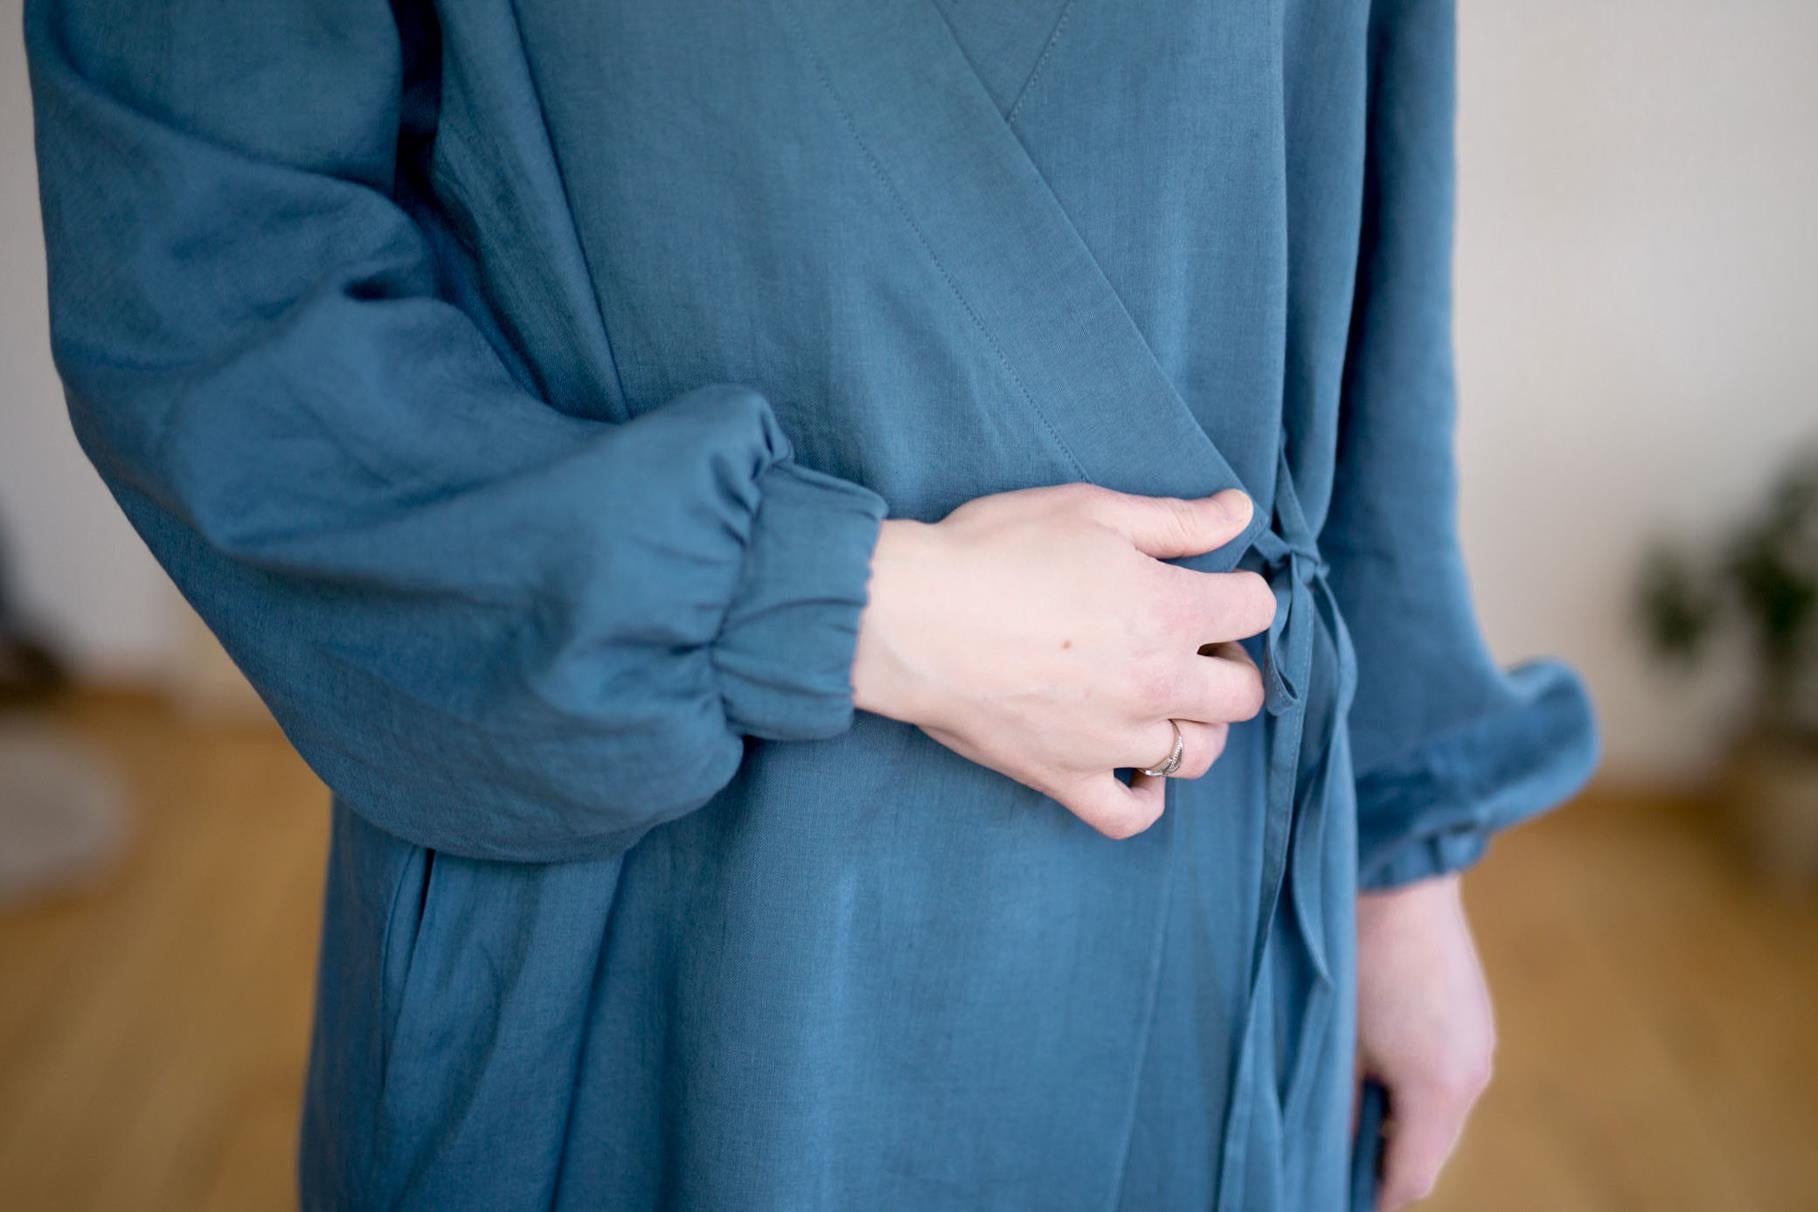 SOPO to sukienka regulowana inspirowana formą kimono. Uszyłam ją z 100% lnu zmiękczanego bardzo przyjemnego w dotyku. SOPO to bardzo sensualna rzecz. Do sukienki dołączam 2 paski: klasyczny oraz innowacyjny pasek-nerkę, który formą nawiązuje luźno do japońskiego obi, jest usztywniany i zapinany na dyskretny zamek. 